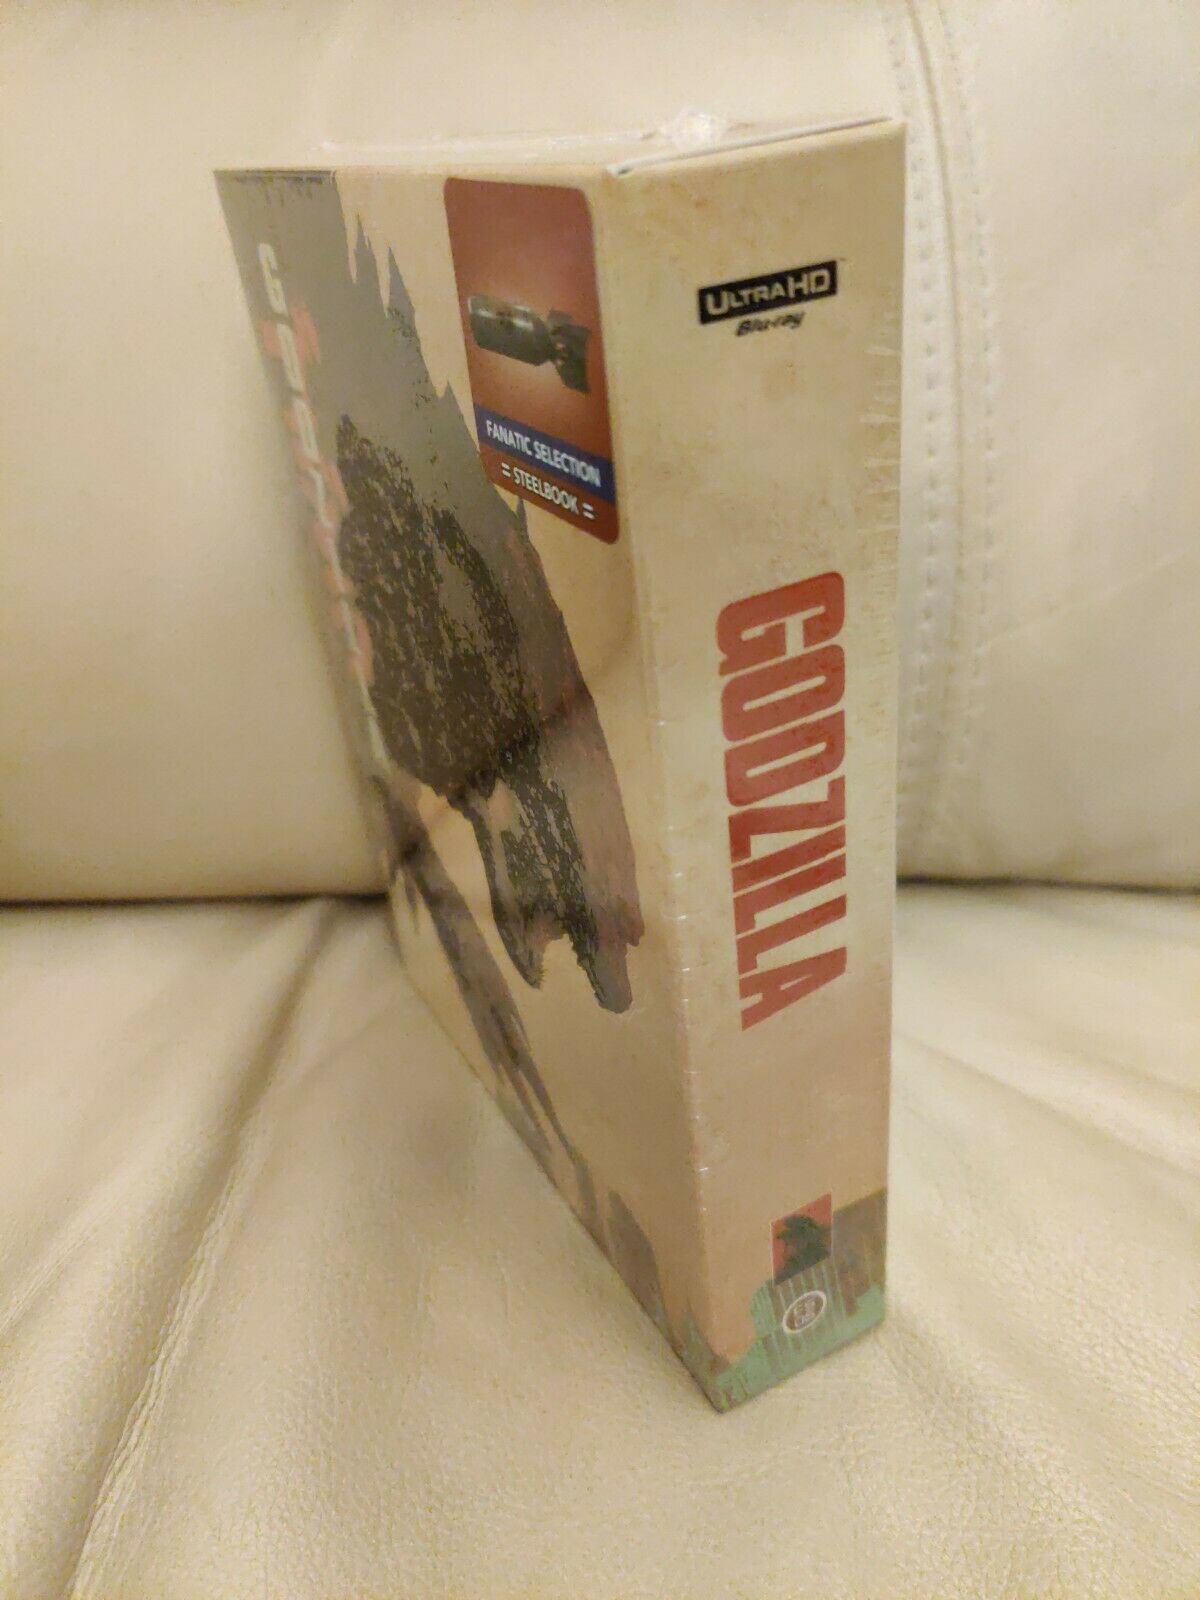 Godzilla (2014) (4K+2D Blu-ray SteelBook) (Fanatic Selection No.5 